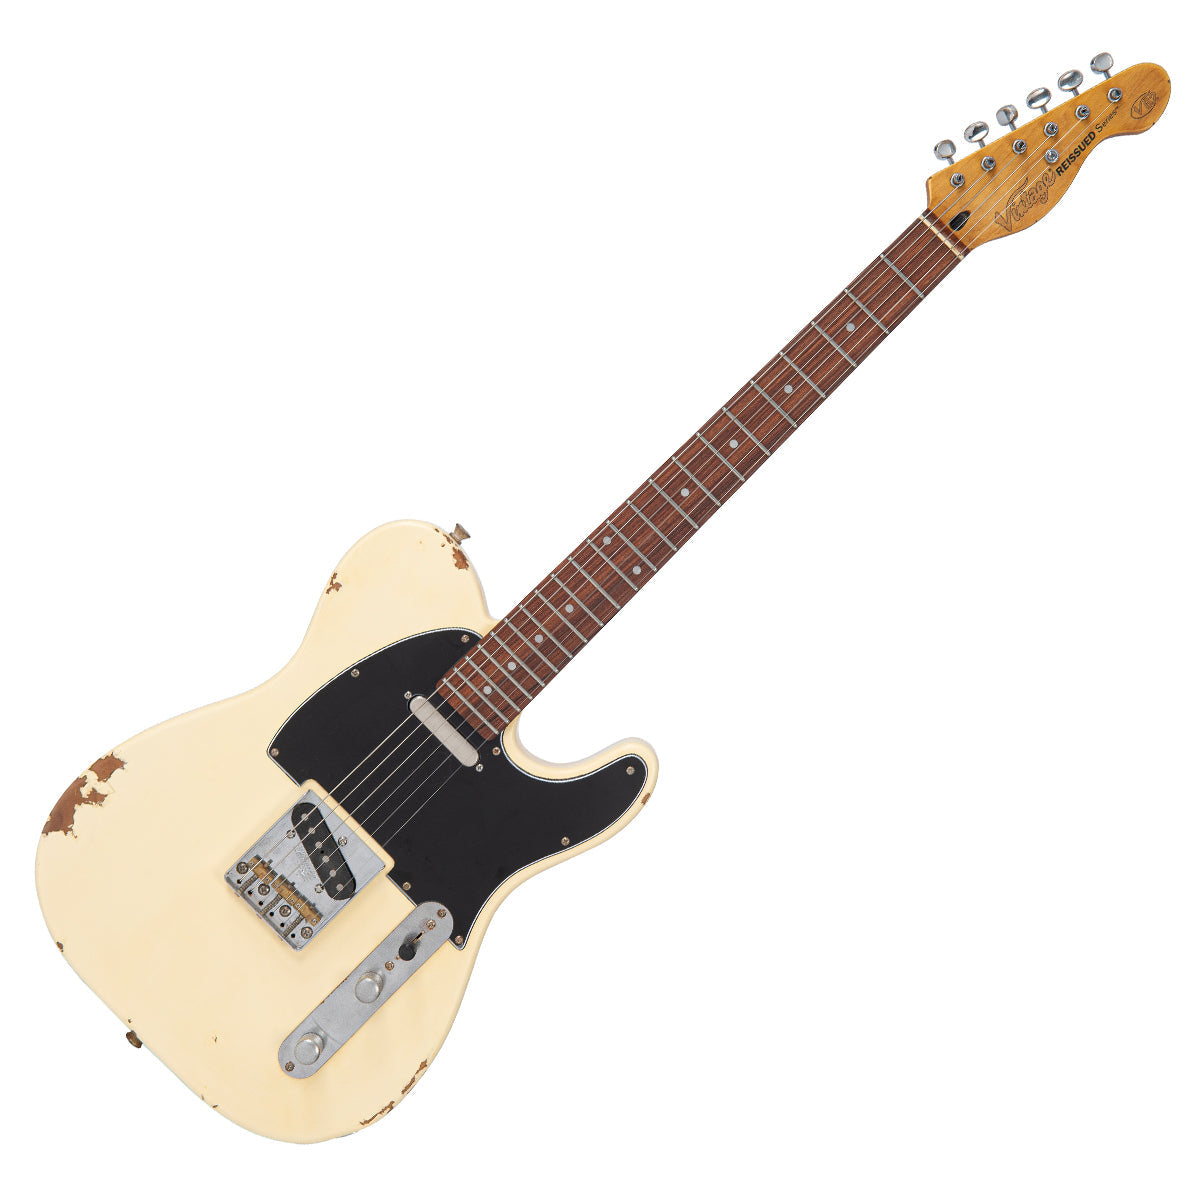 SOLD - Vintage V62 ProShop Custom Build ~ Vintage White, Electrics for sale at Richards Guitars.